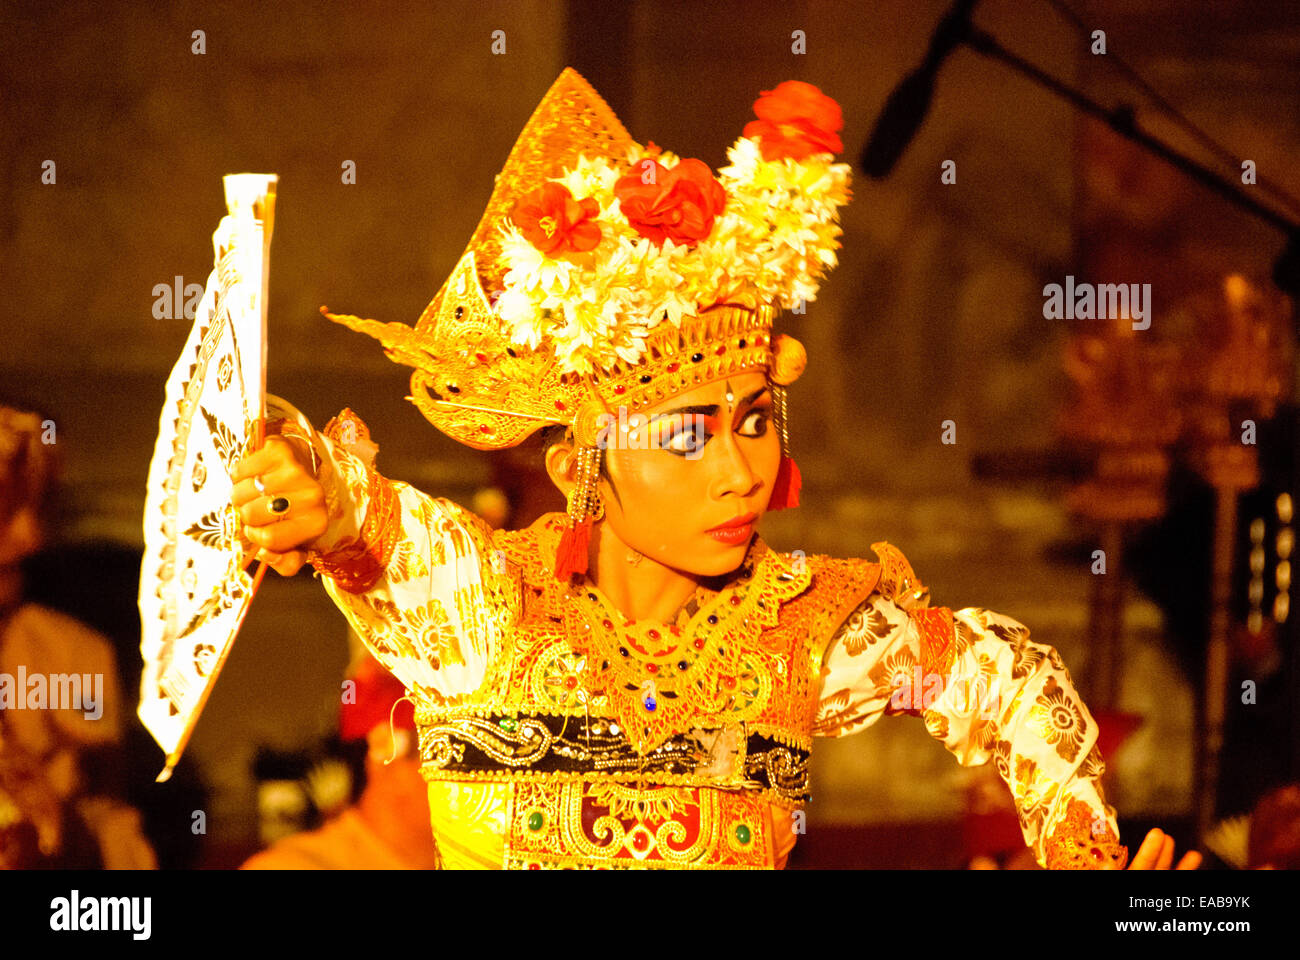 Bali traditional dancing in Ubud. Stock Photo